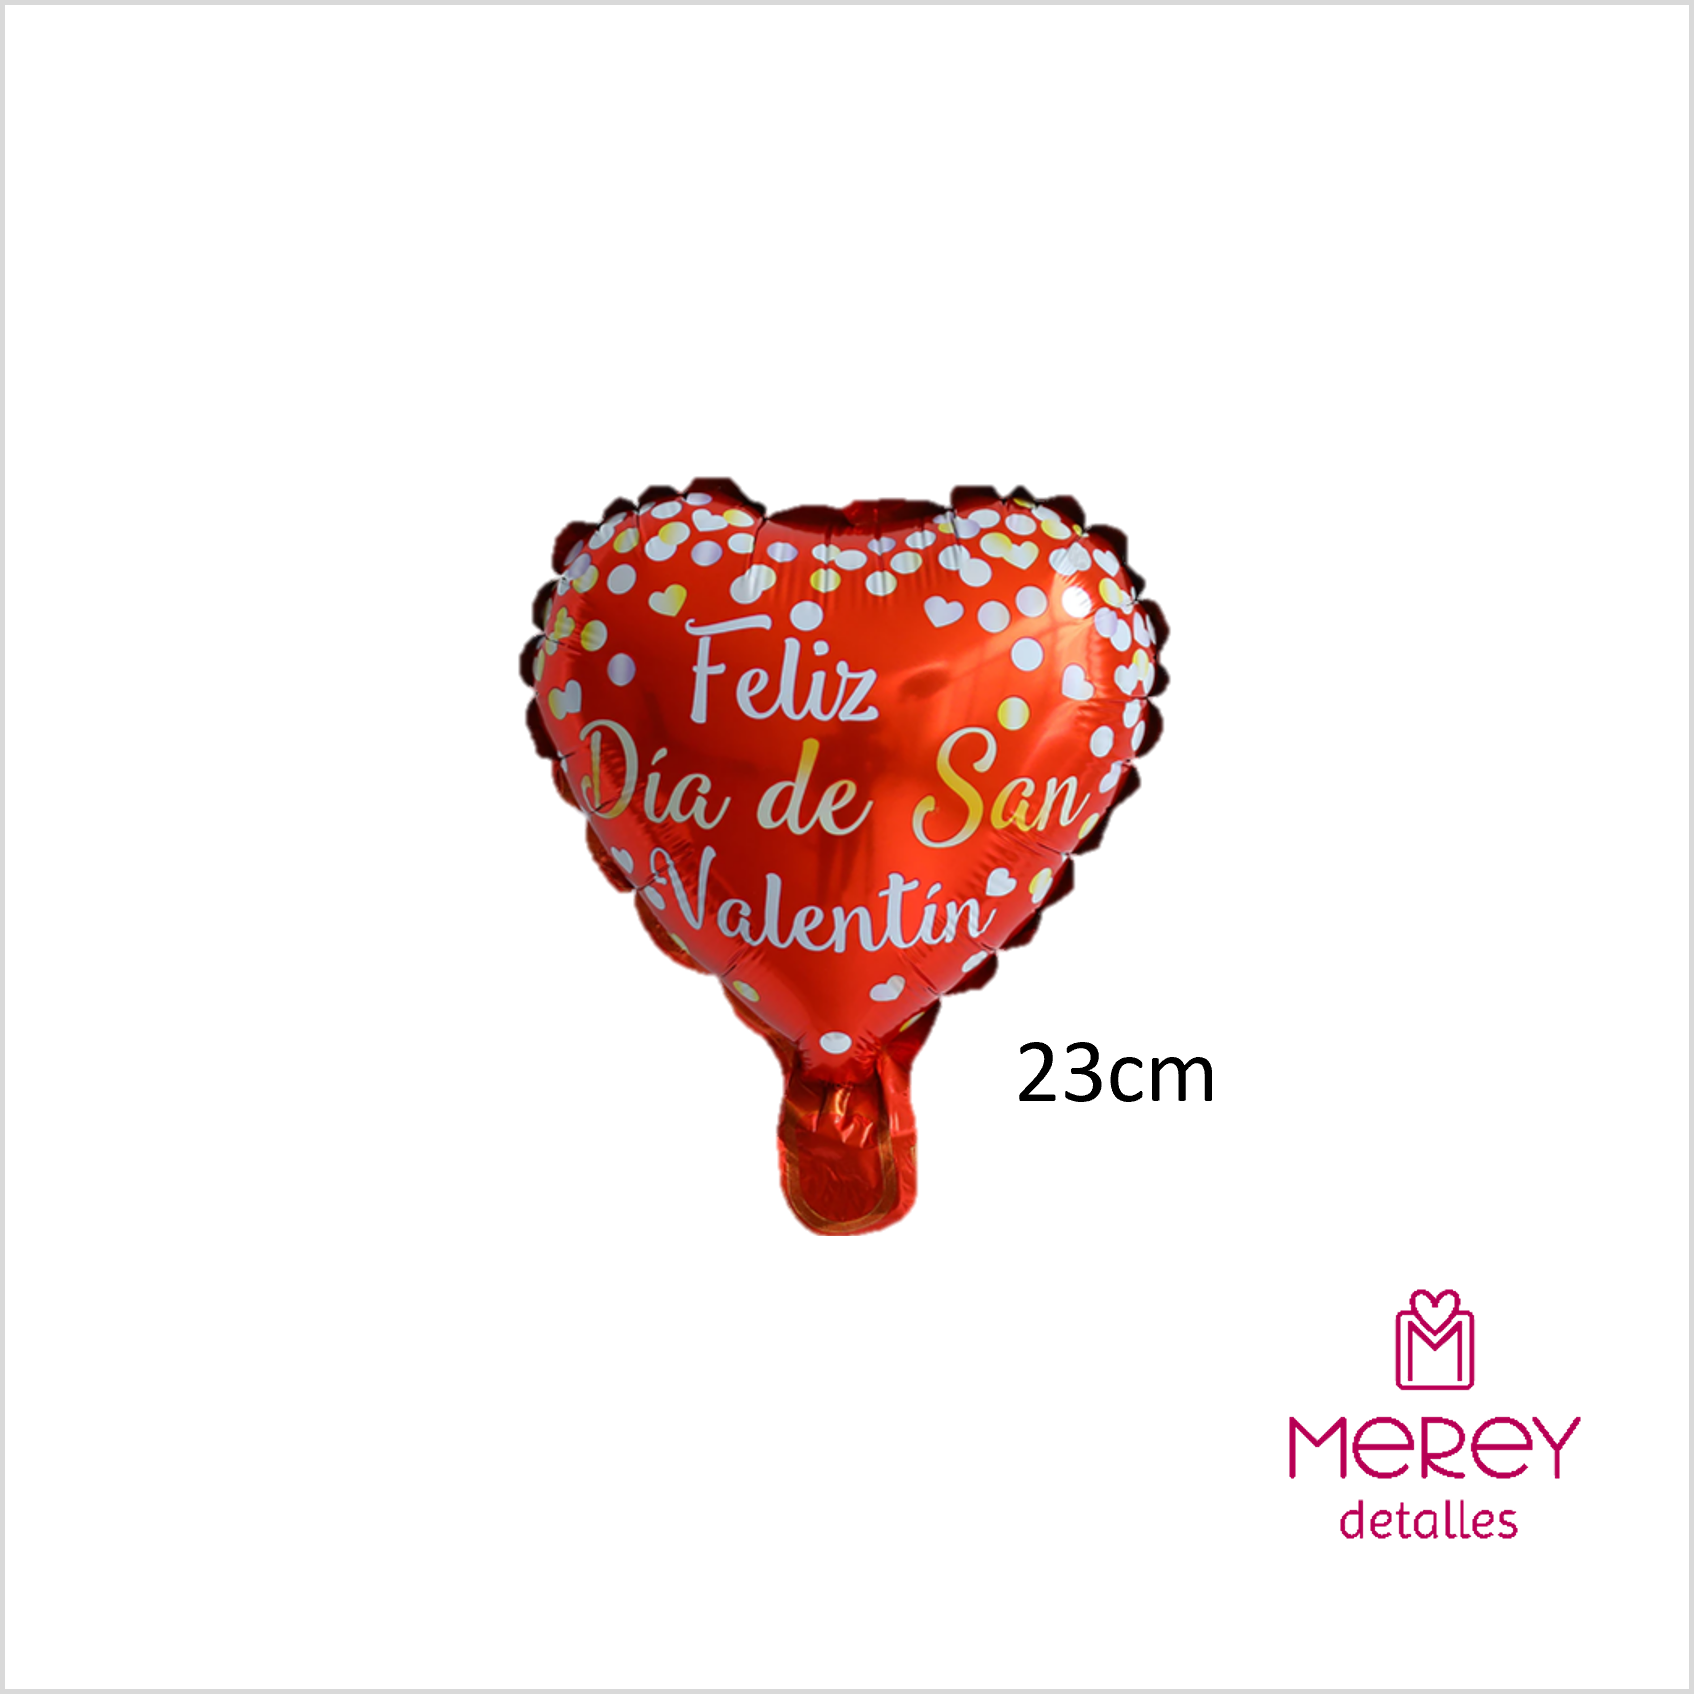 Feliz día de san valentín decoración con globo en forma de corazón